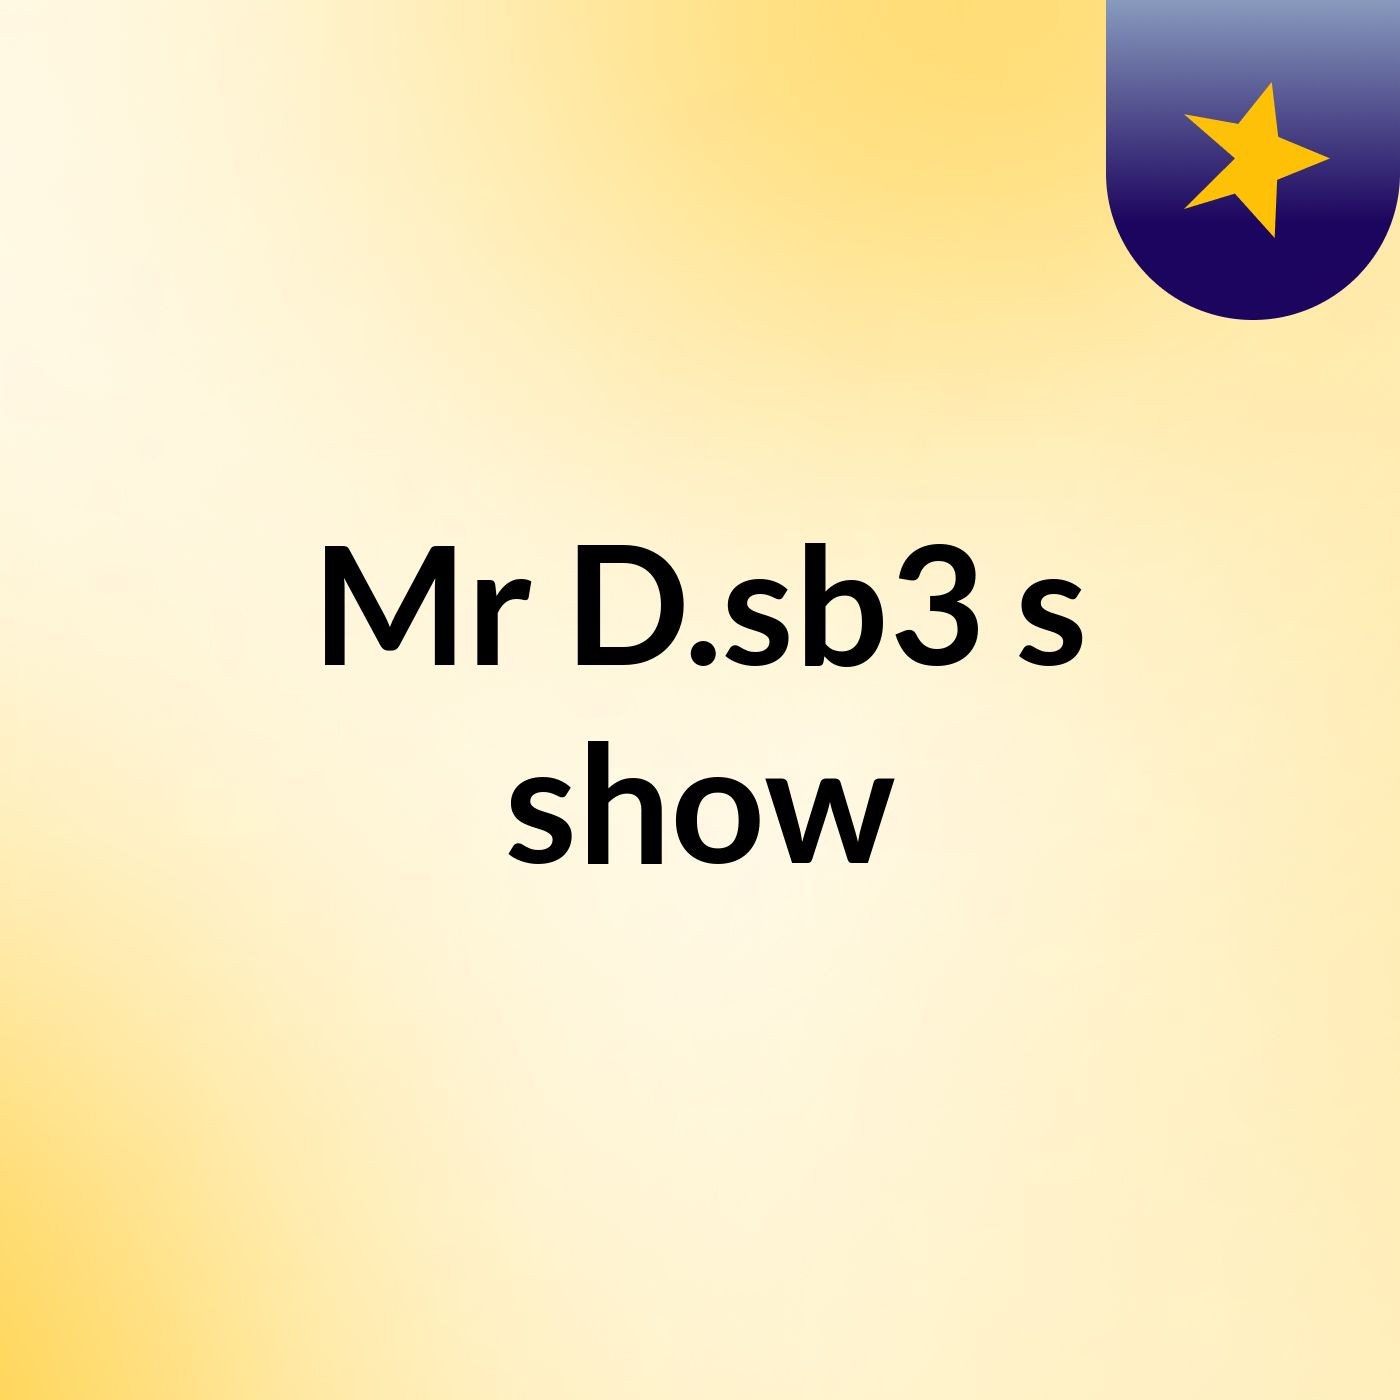 Mr D.sb3's show